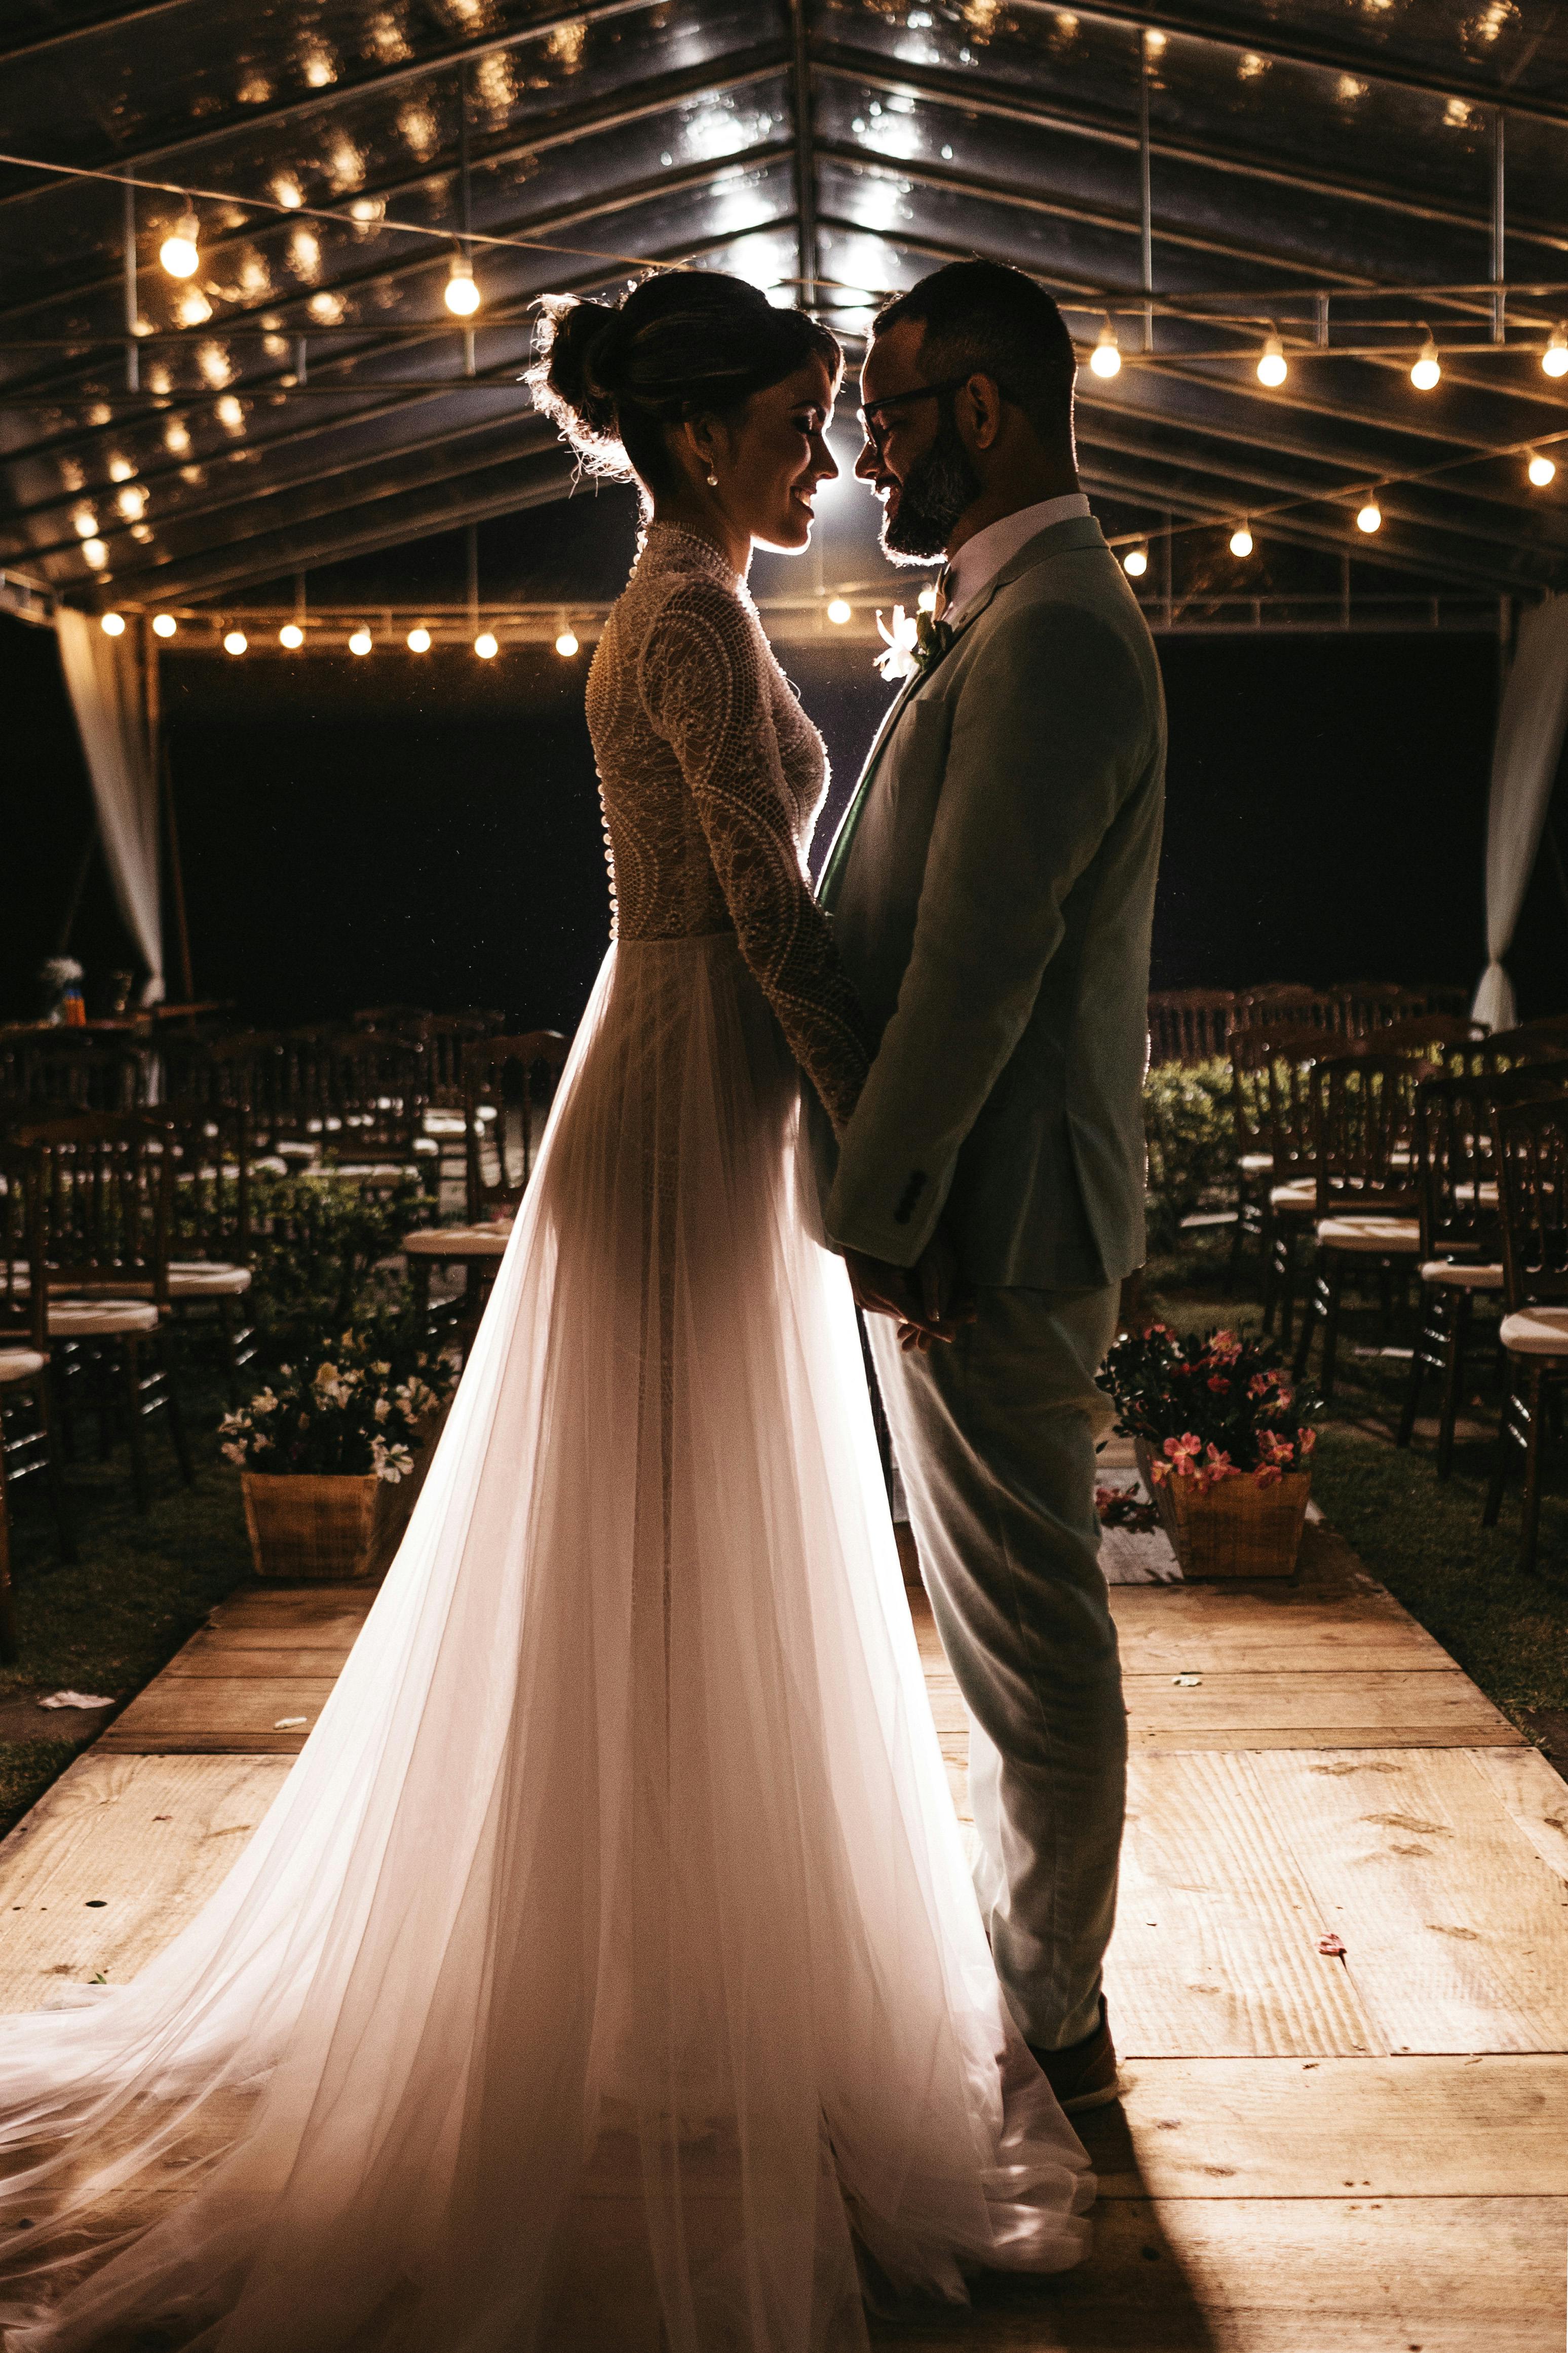 Une mariée et un marié partageant un moment spécial | Source : Pexels